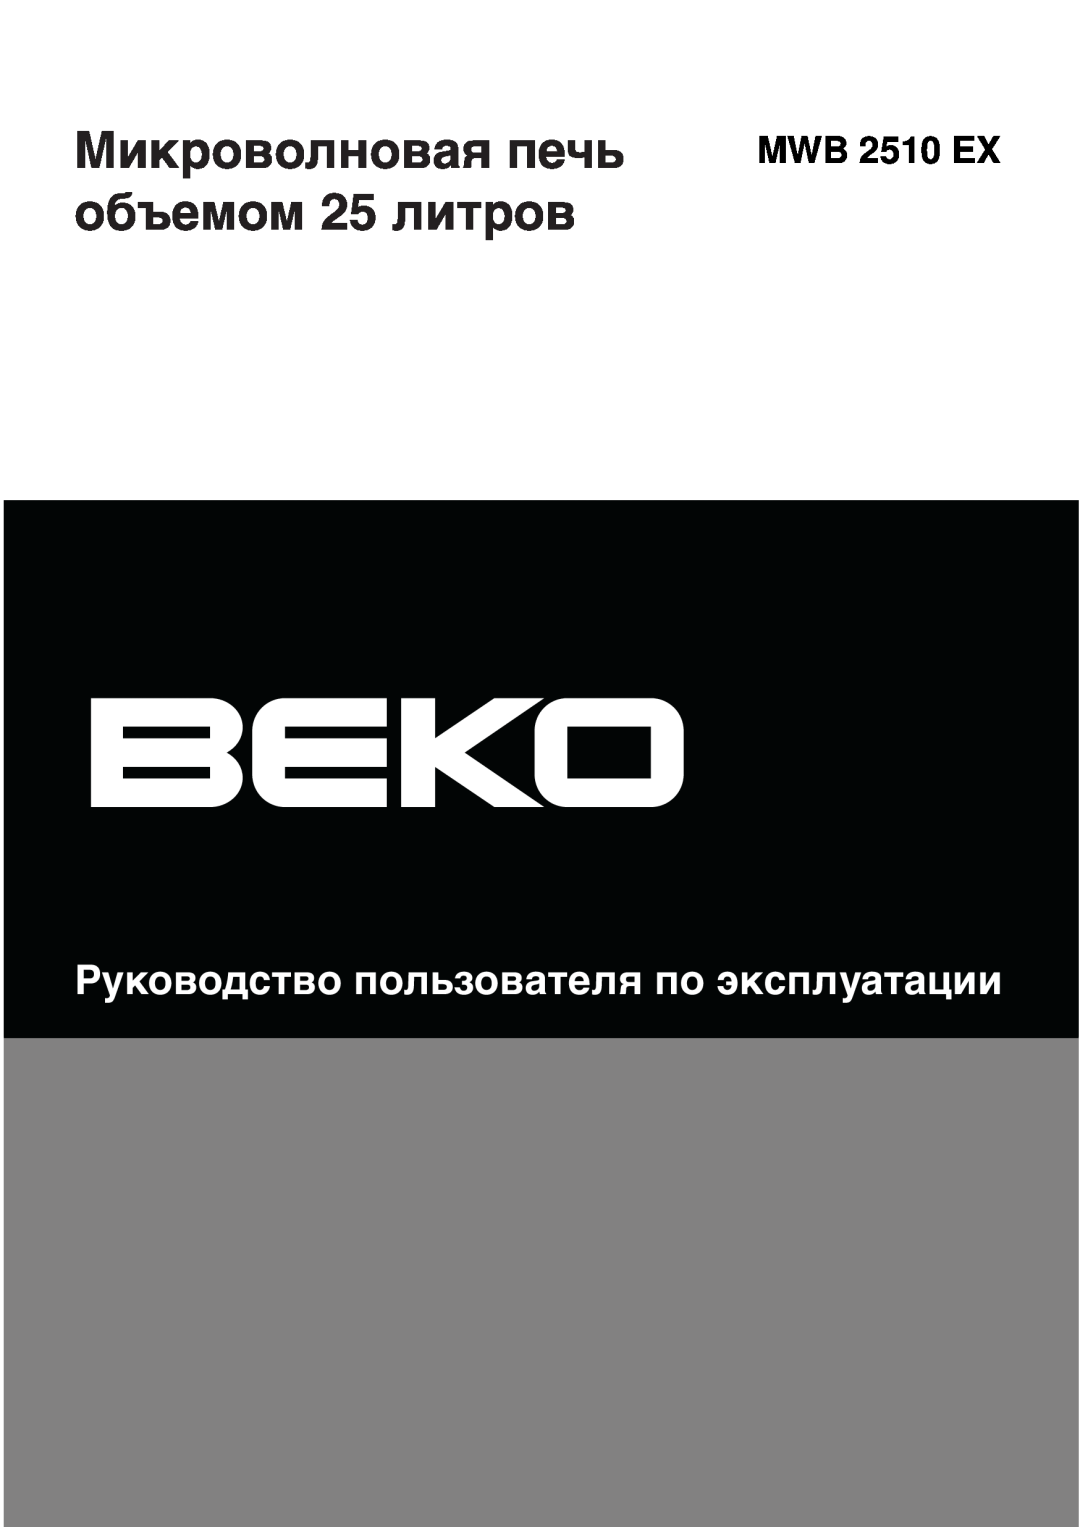 Beko MWB 2510 EX instruction manual Микроволновая печь объемом 25 литров, Руководство пользователя по эксплуатации 